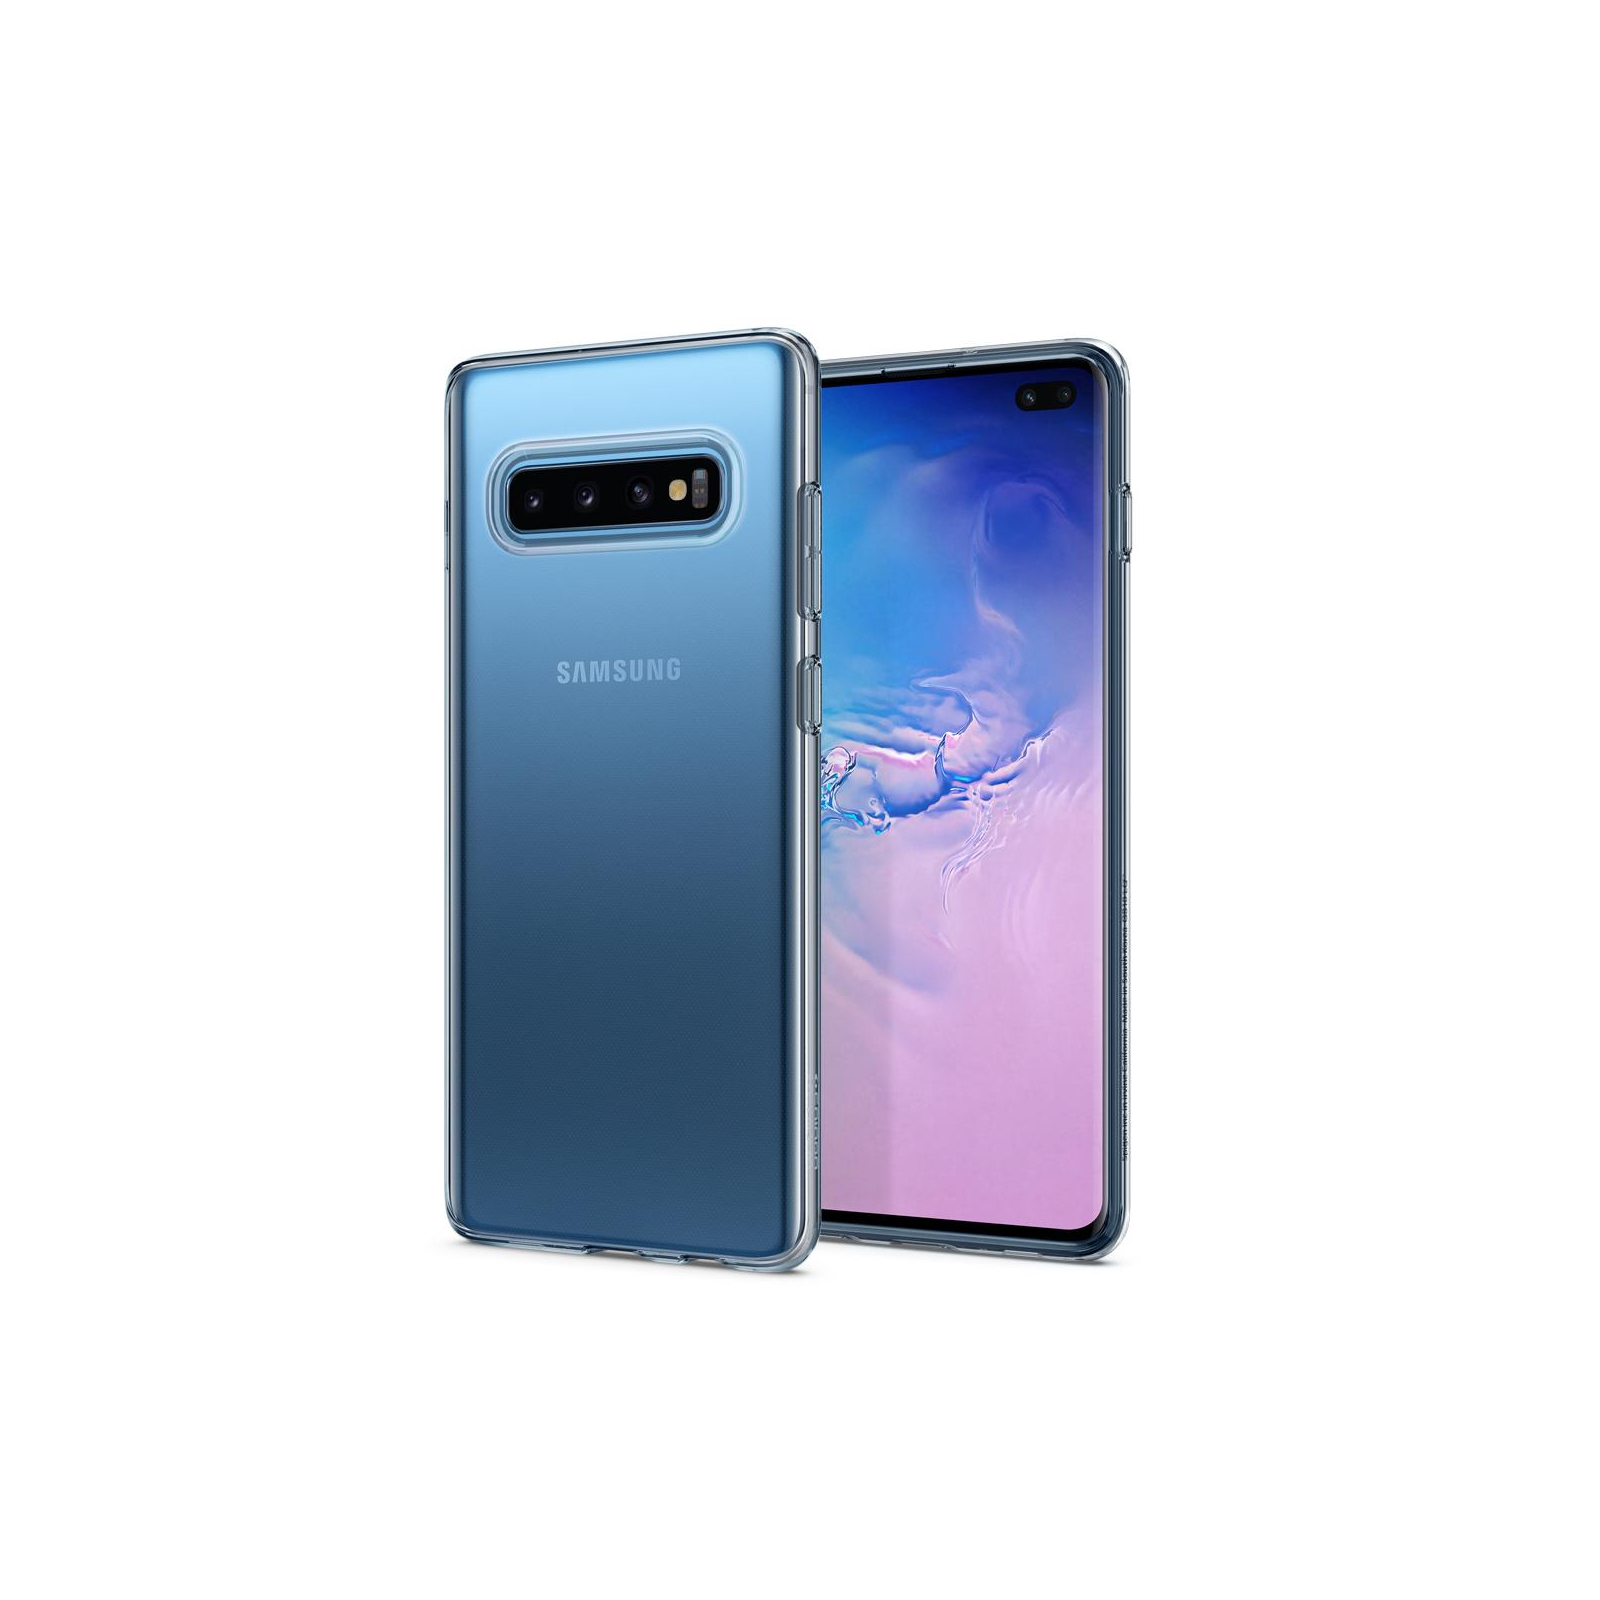 Чехол для мобильного телефона Spigen Galaxy S10+ Liquid Crystal Crystal Clear (606CS25761) изображение 9